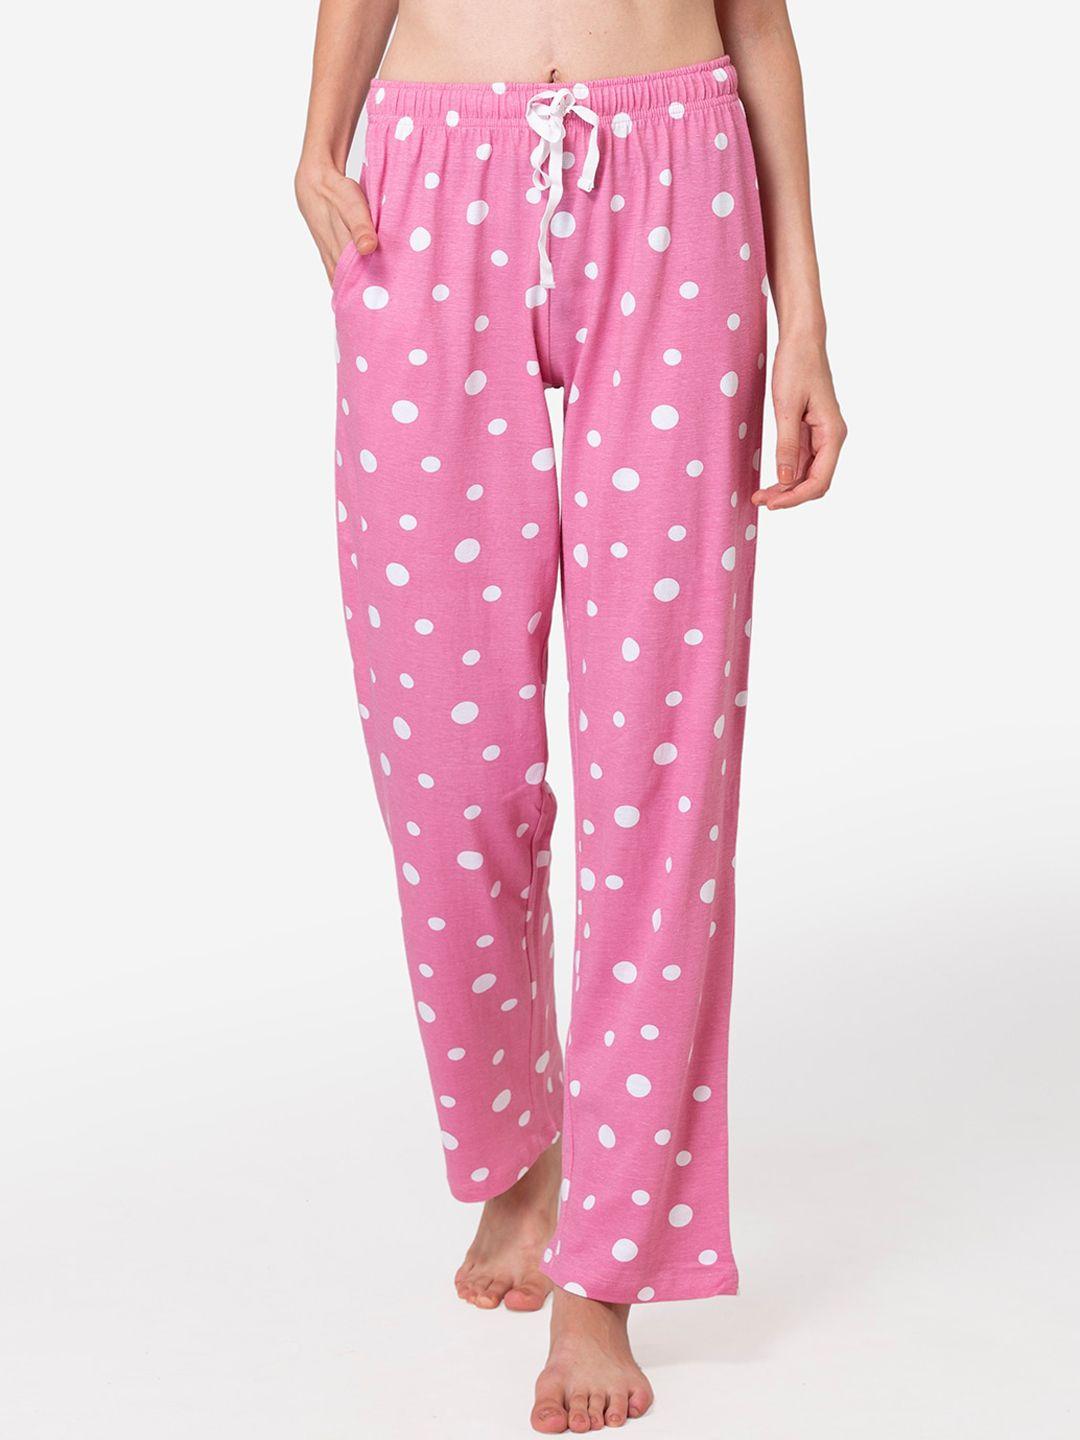 lounge dreams woman pink polka dot cotton pyjamas